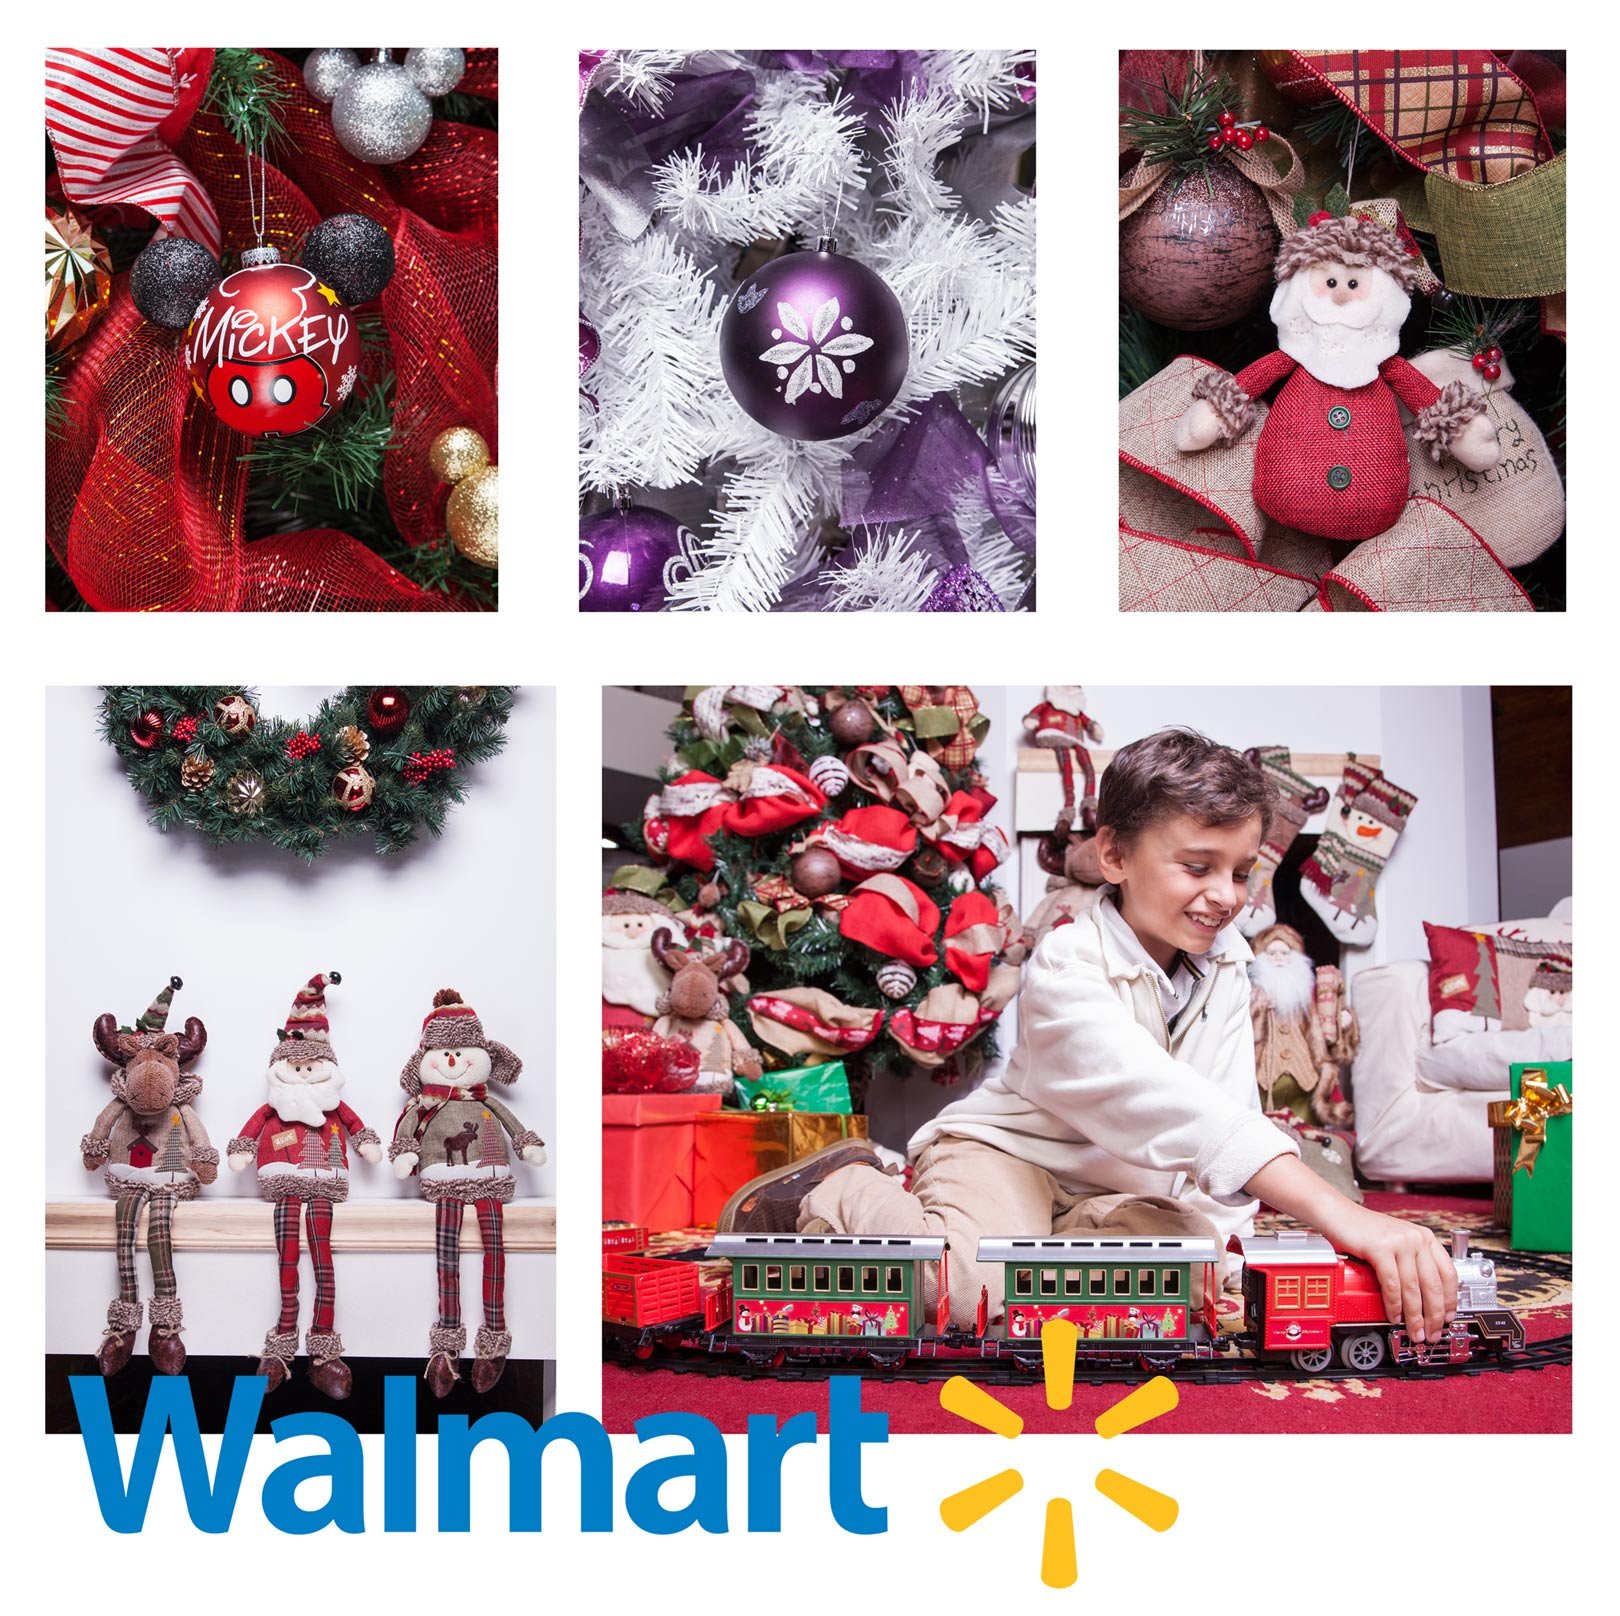 Walmart_Xmas_Products_4webSet-2.jpg